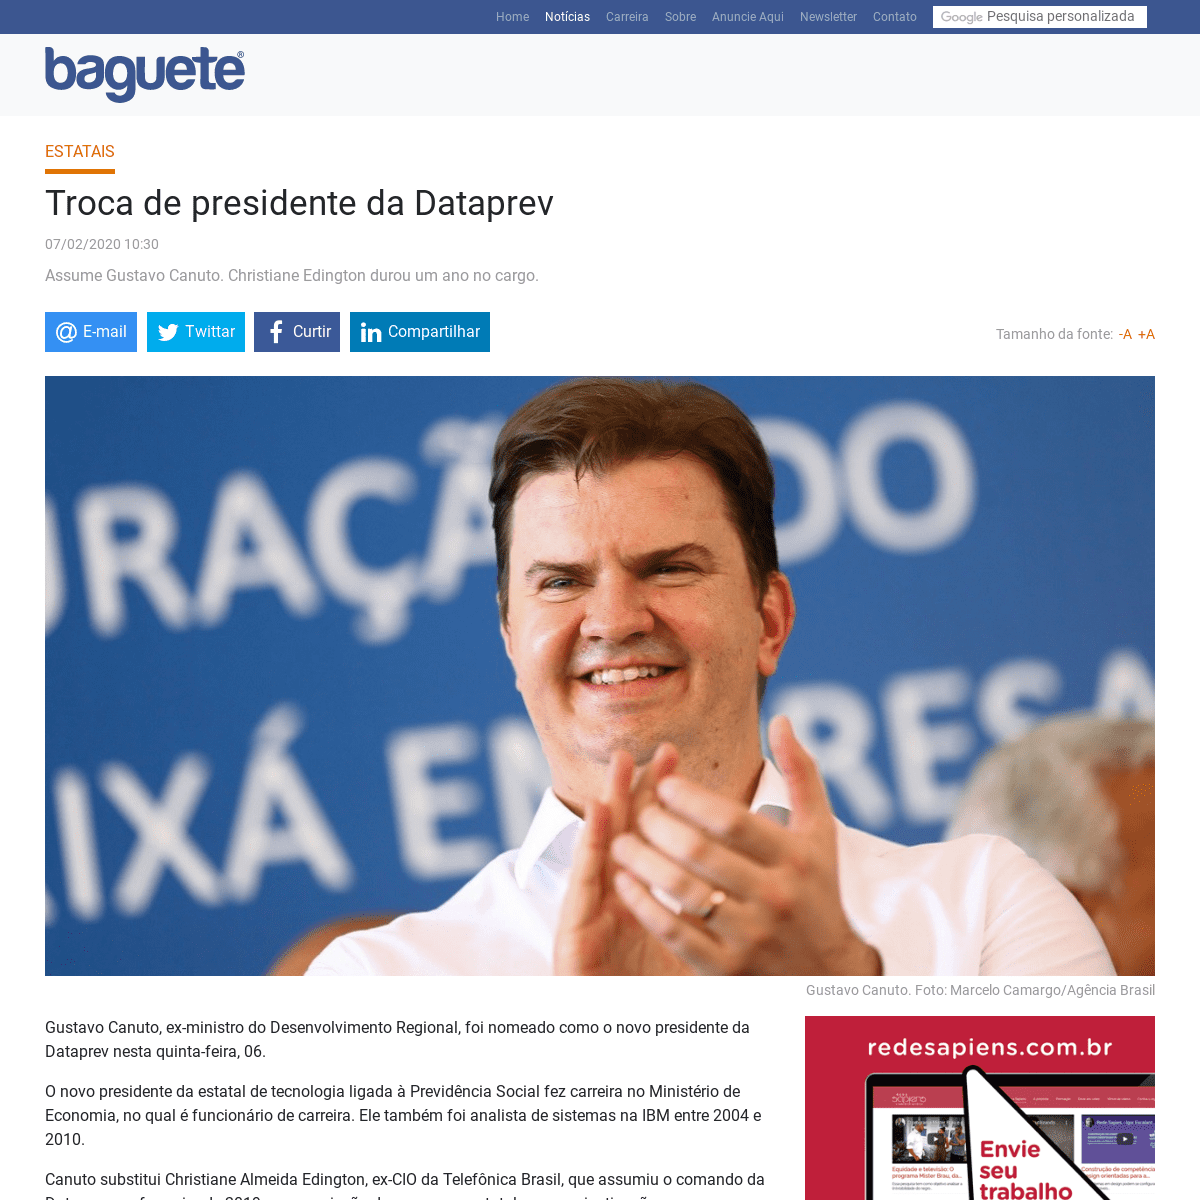 A complete backup of www.baguete.com.br/noticias/07/02/2020/troca-de-presidente-da-dataprev